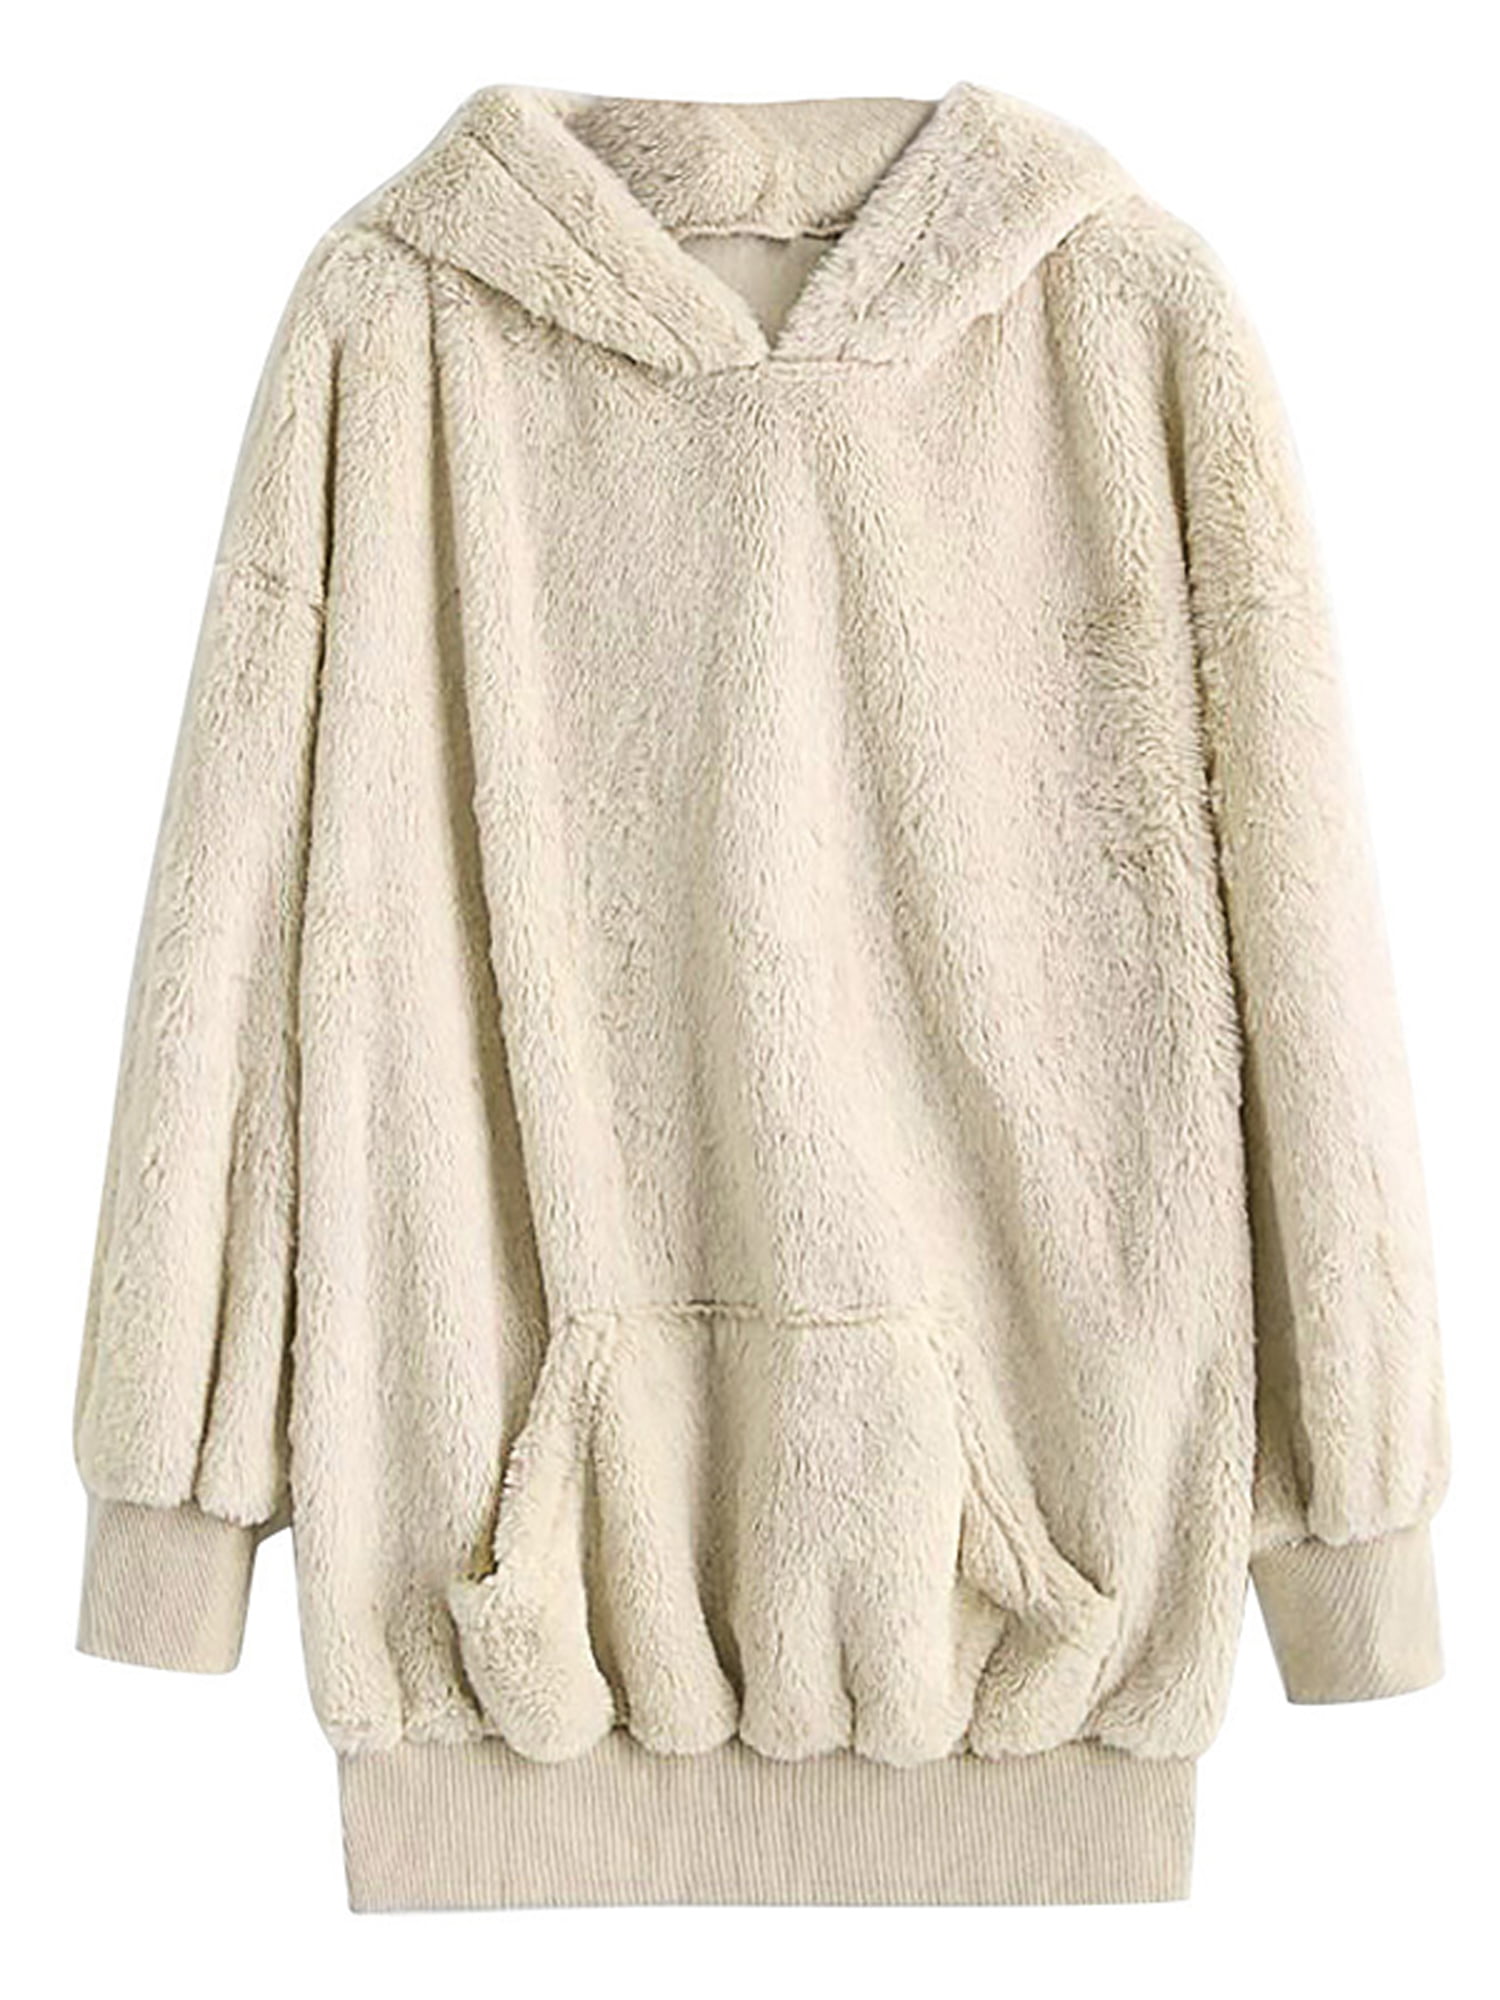 HDGTSA Women Fleece Hooded Pullover Embroidery Cat Ear Plus Size Hoodie Sweatshirt Top Sweater